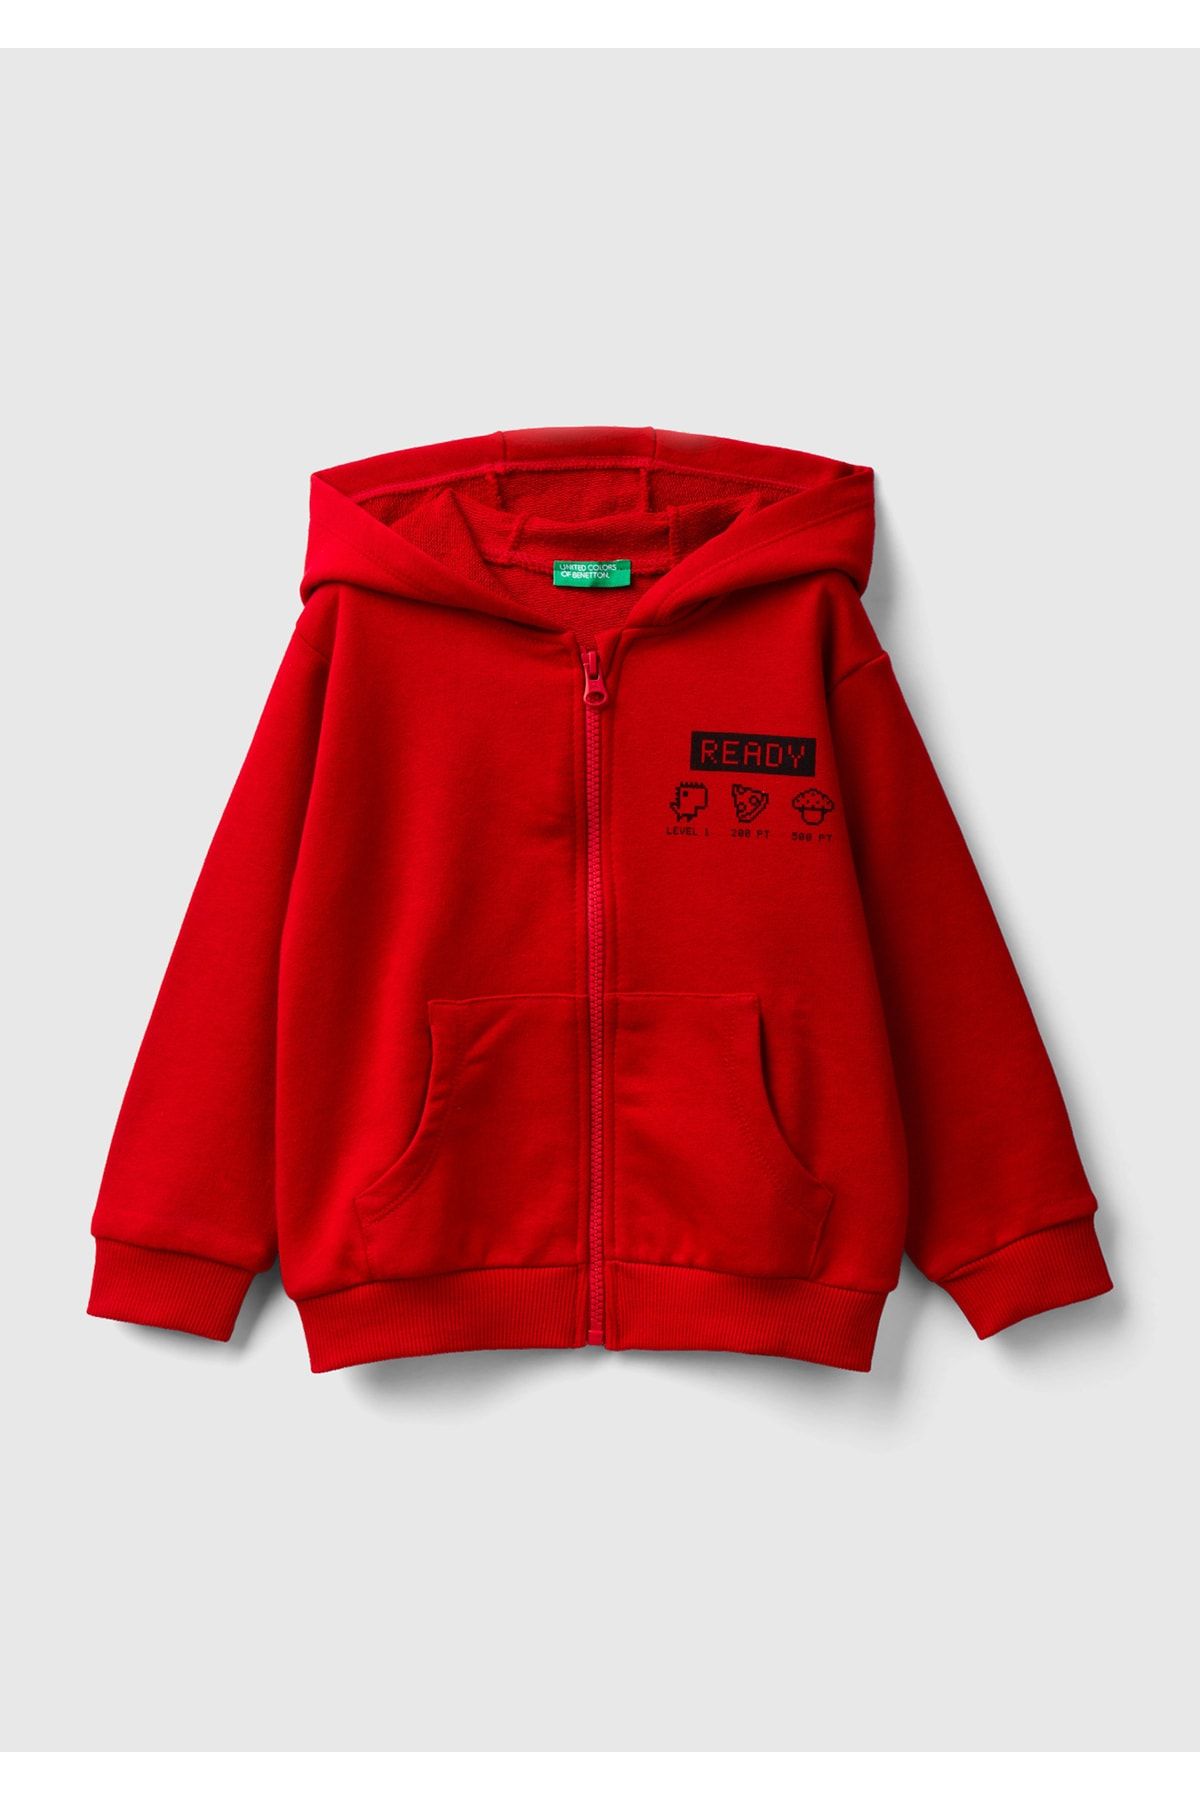 United Colors of Benetton Erkek Çocuk 0V3 Grafik Baskılı Sweatshirt Koyu Kırmızı